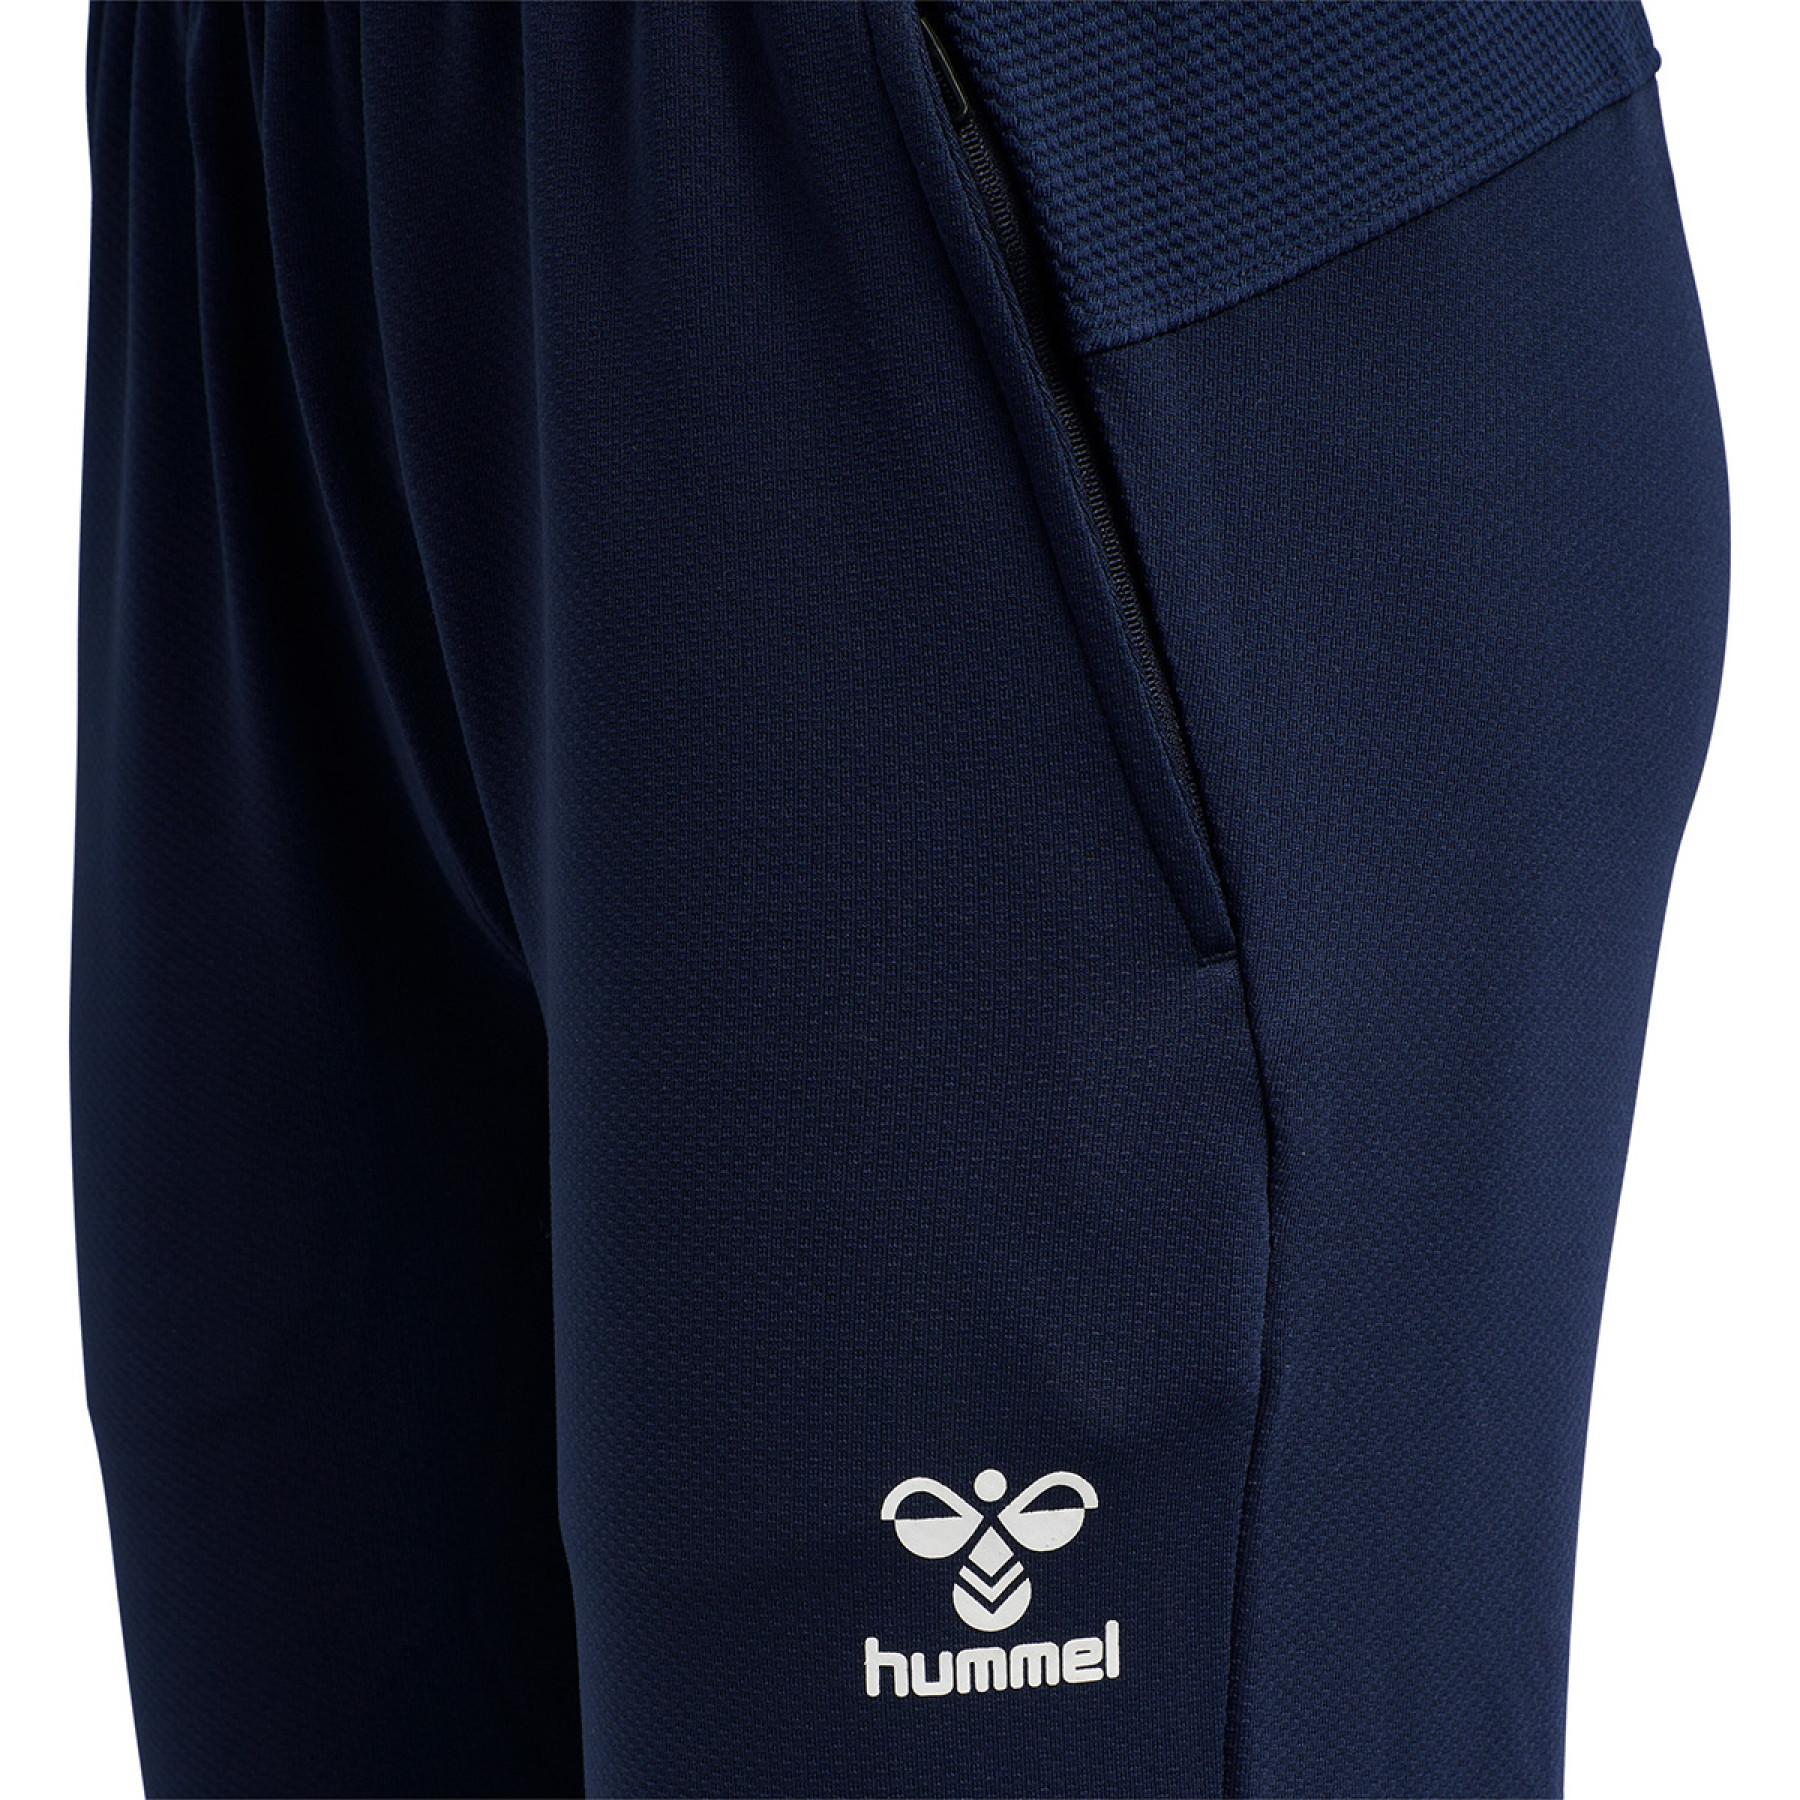 Pantalón Hummel hmllead poly